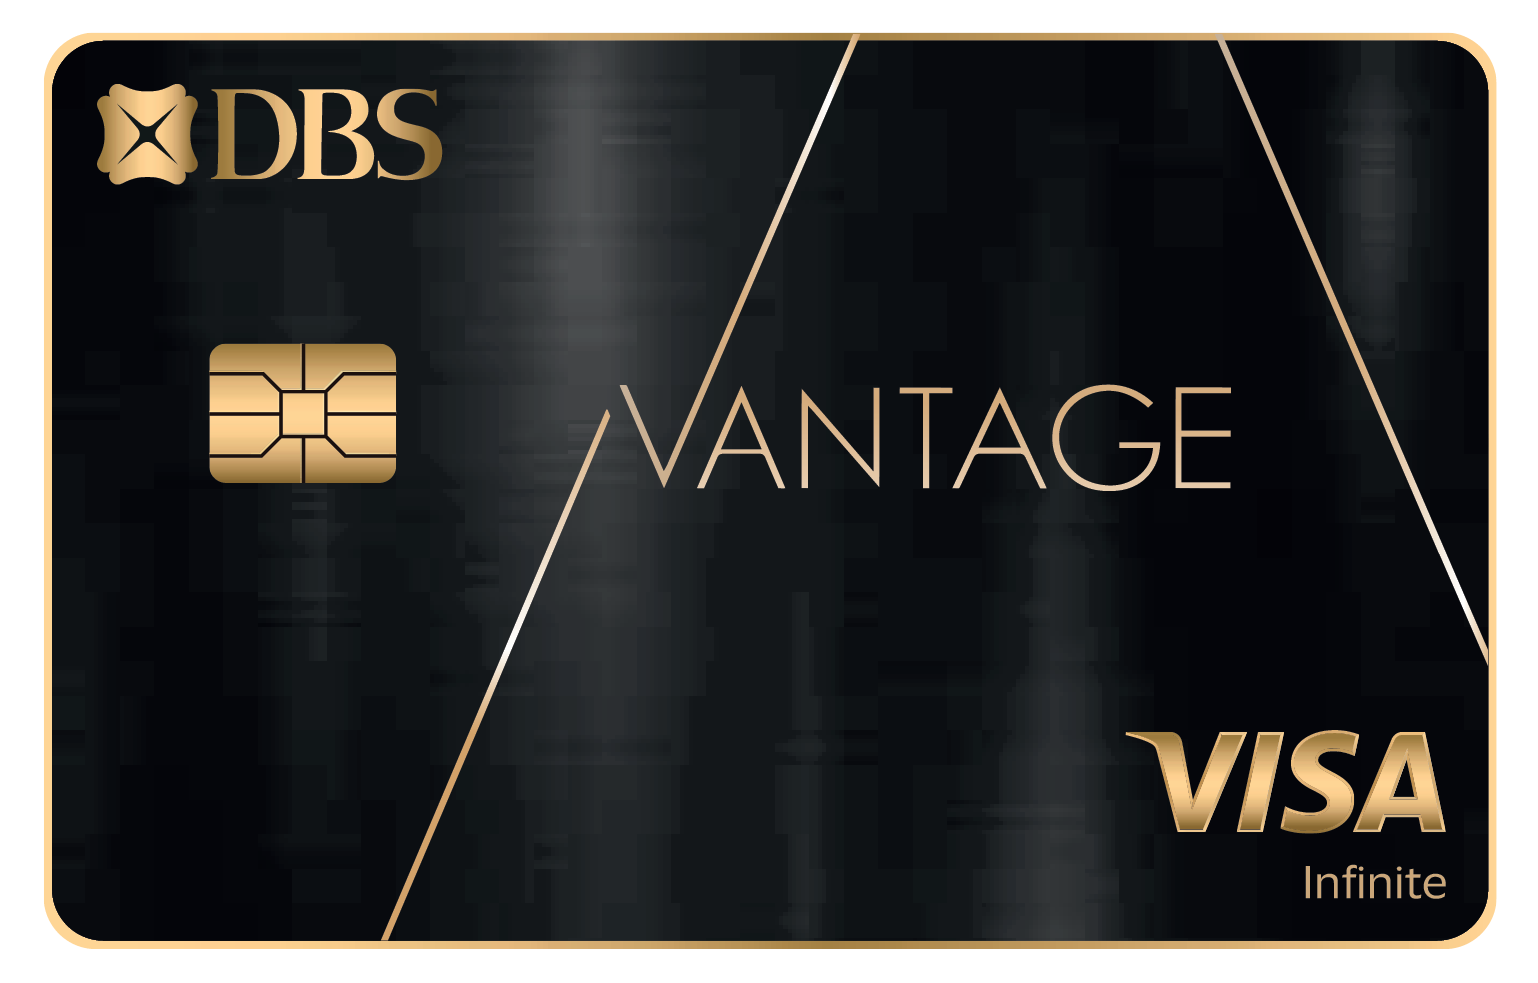 DBS Vantage Card